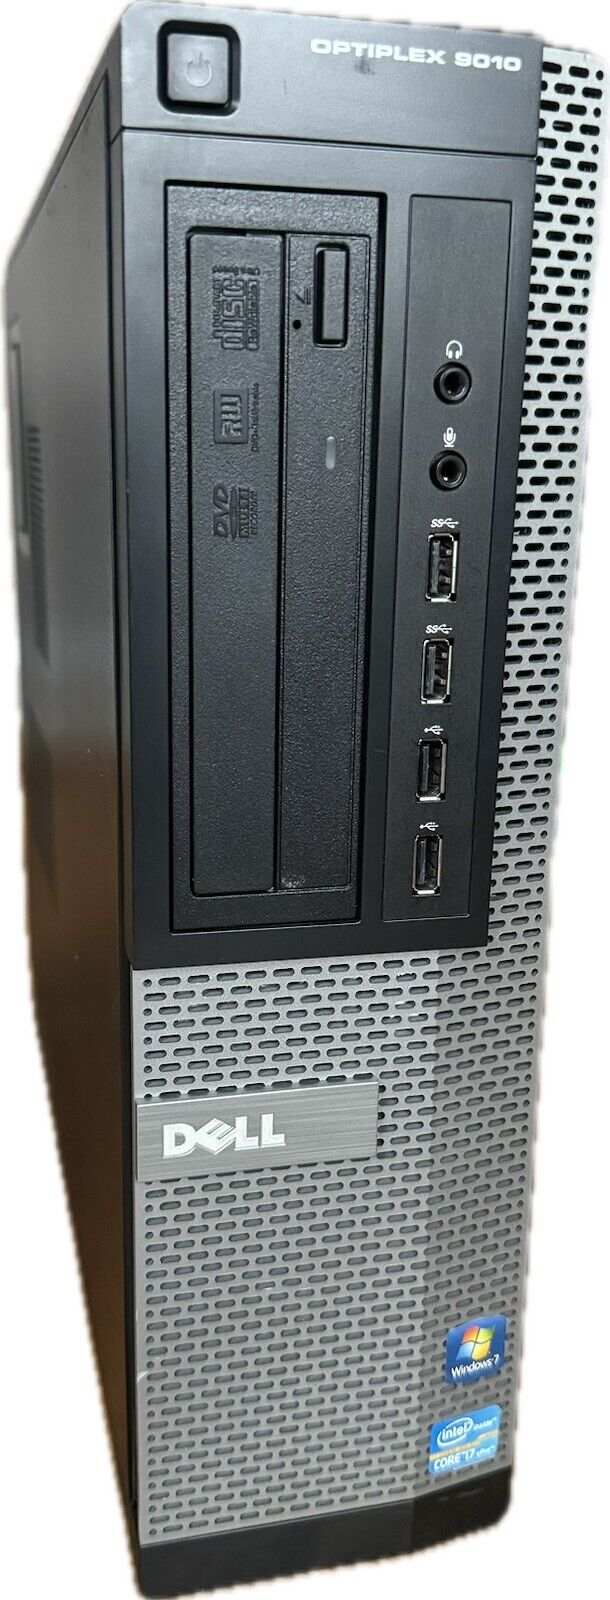 Dell Optiplex 9010 DT Quad-Core i7 3770 3.40 GHz 8 GB RAM 320 GB HDD Win 10 PRO